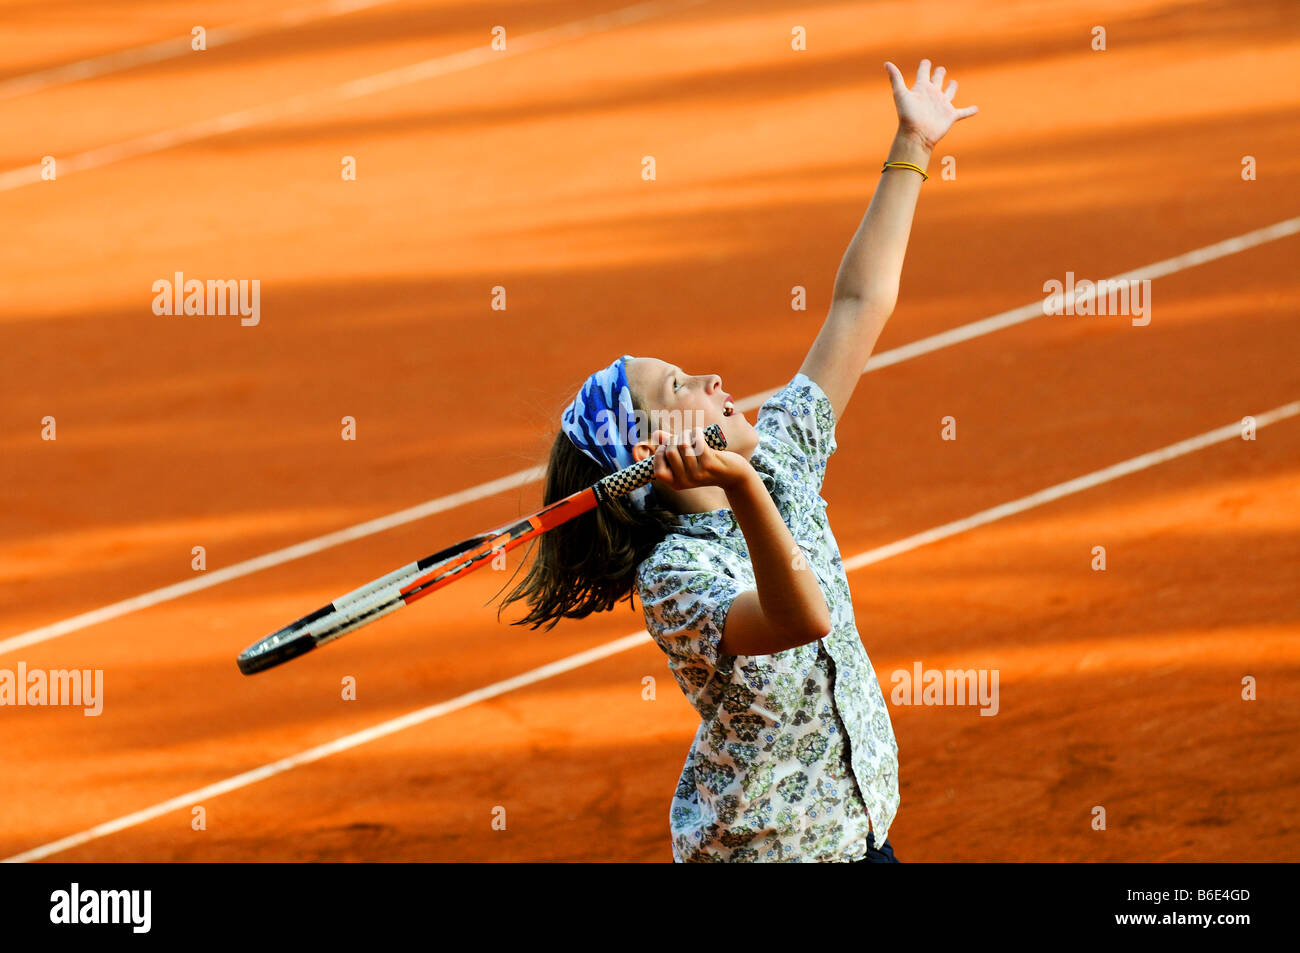 La acción Cerrar Foto de niña jugando tenis Foto de stock